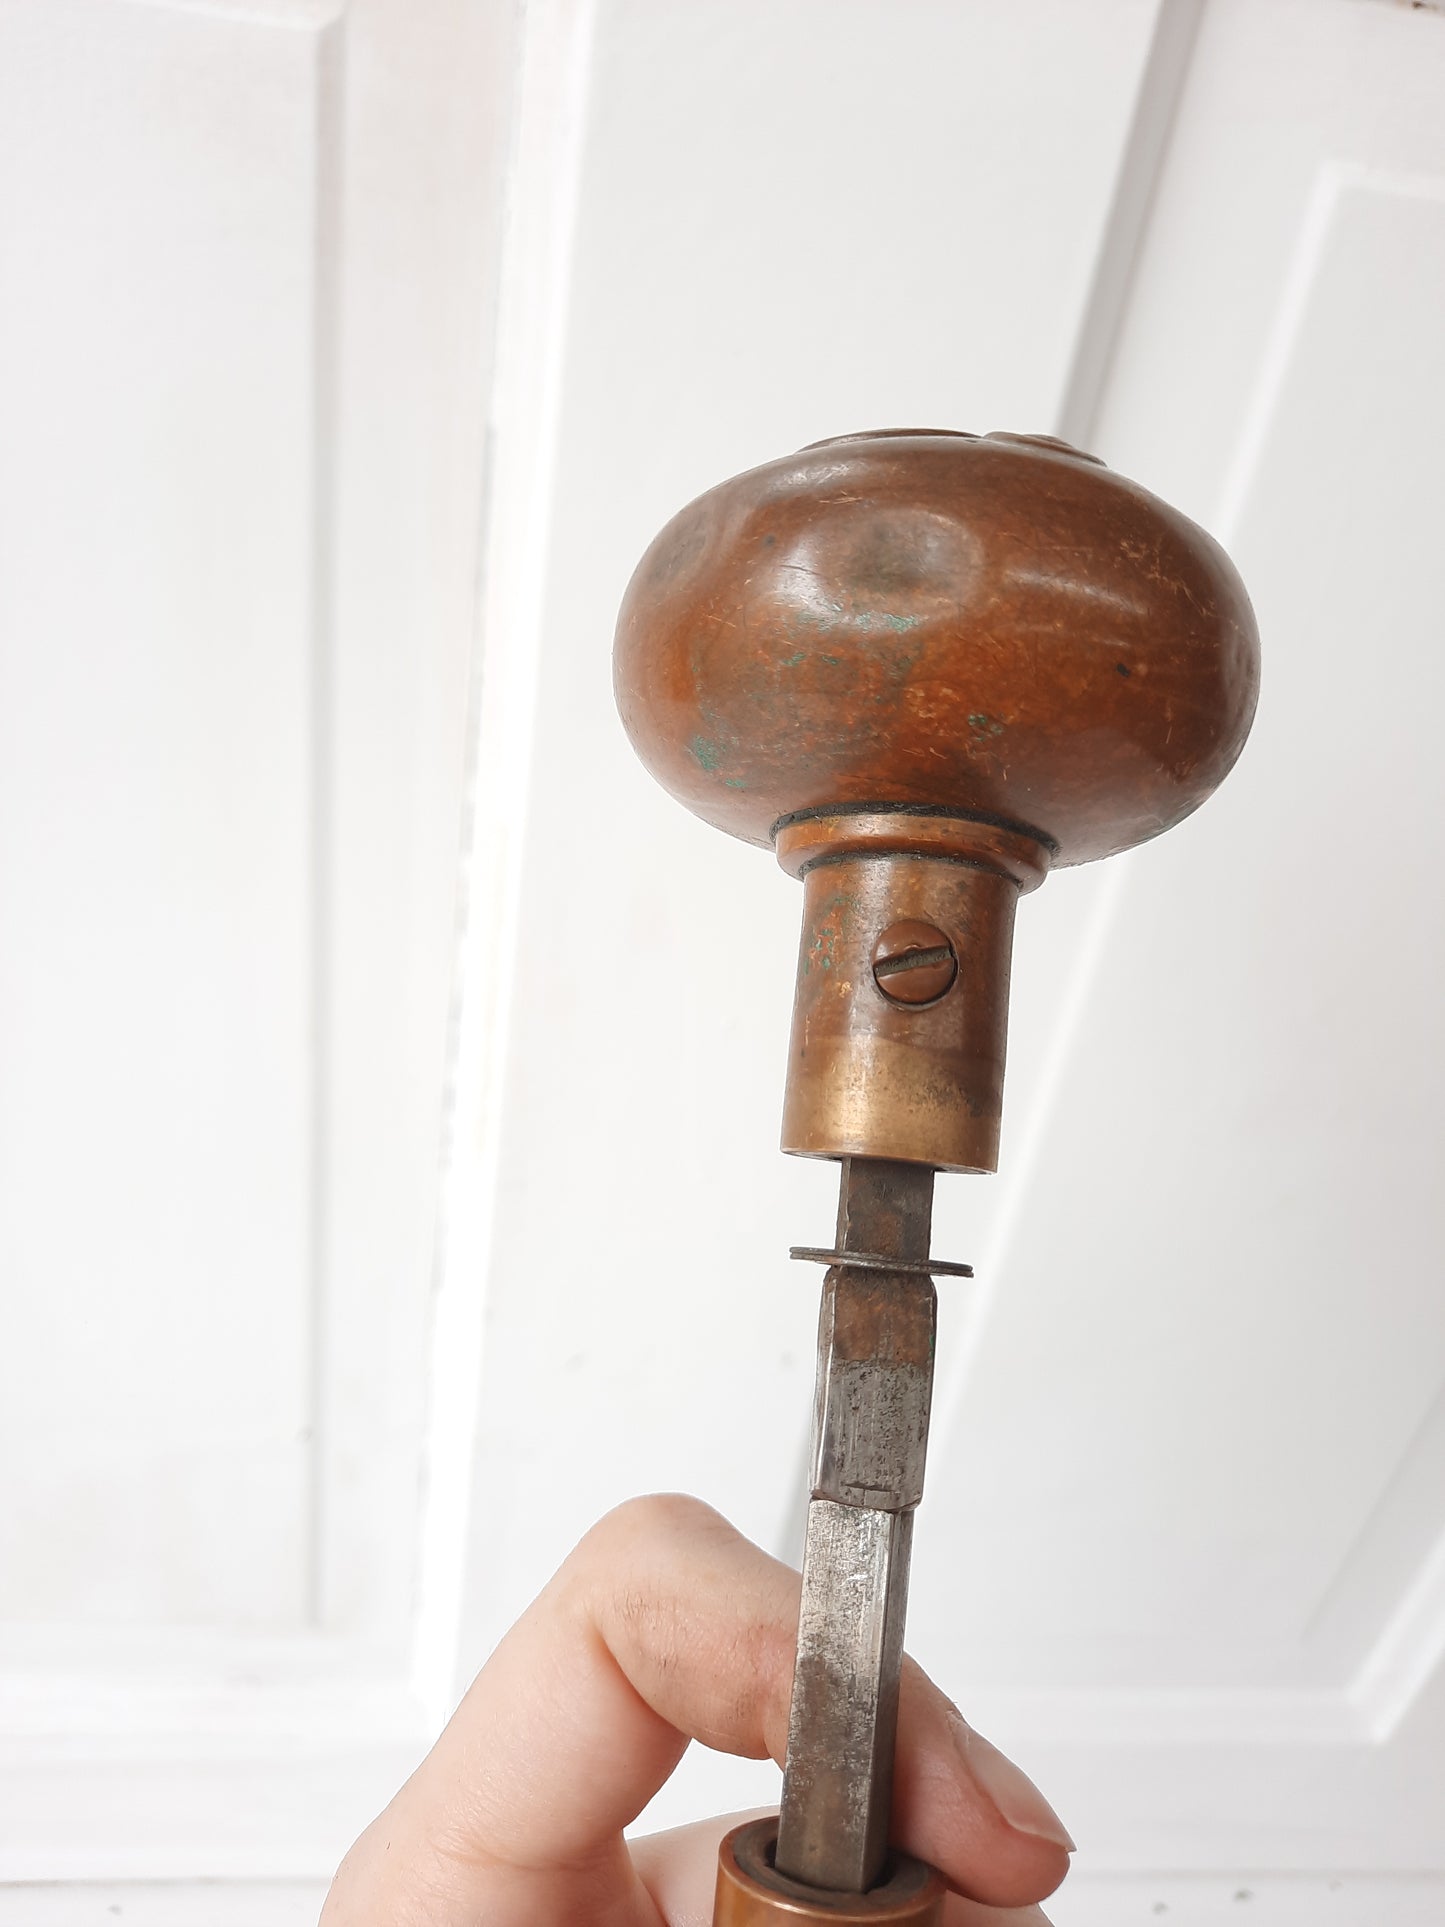 Norwalk Spiral Pattern Doorknob Set with Large Entry Knob, Antique Swirl Design Bronze Door Knob Pair